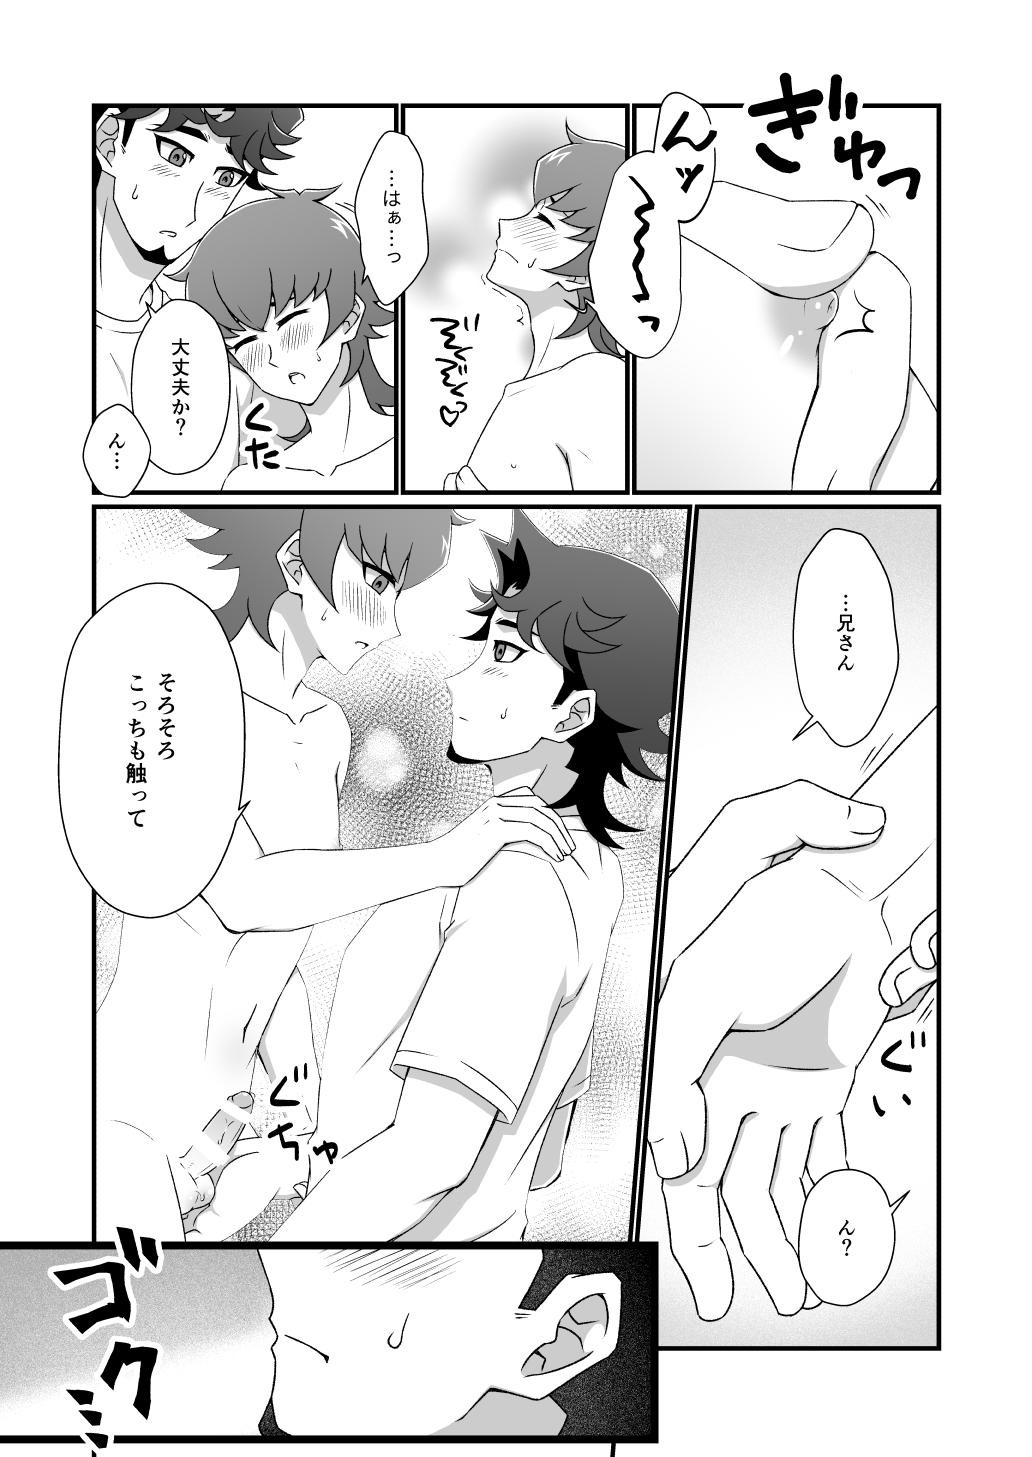 4some Mayonakaressun fukushu-hen - Yu gi oh vrains Gay Shop - Page 3